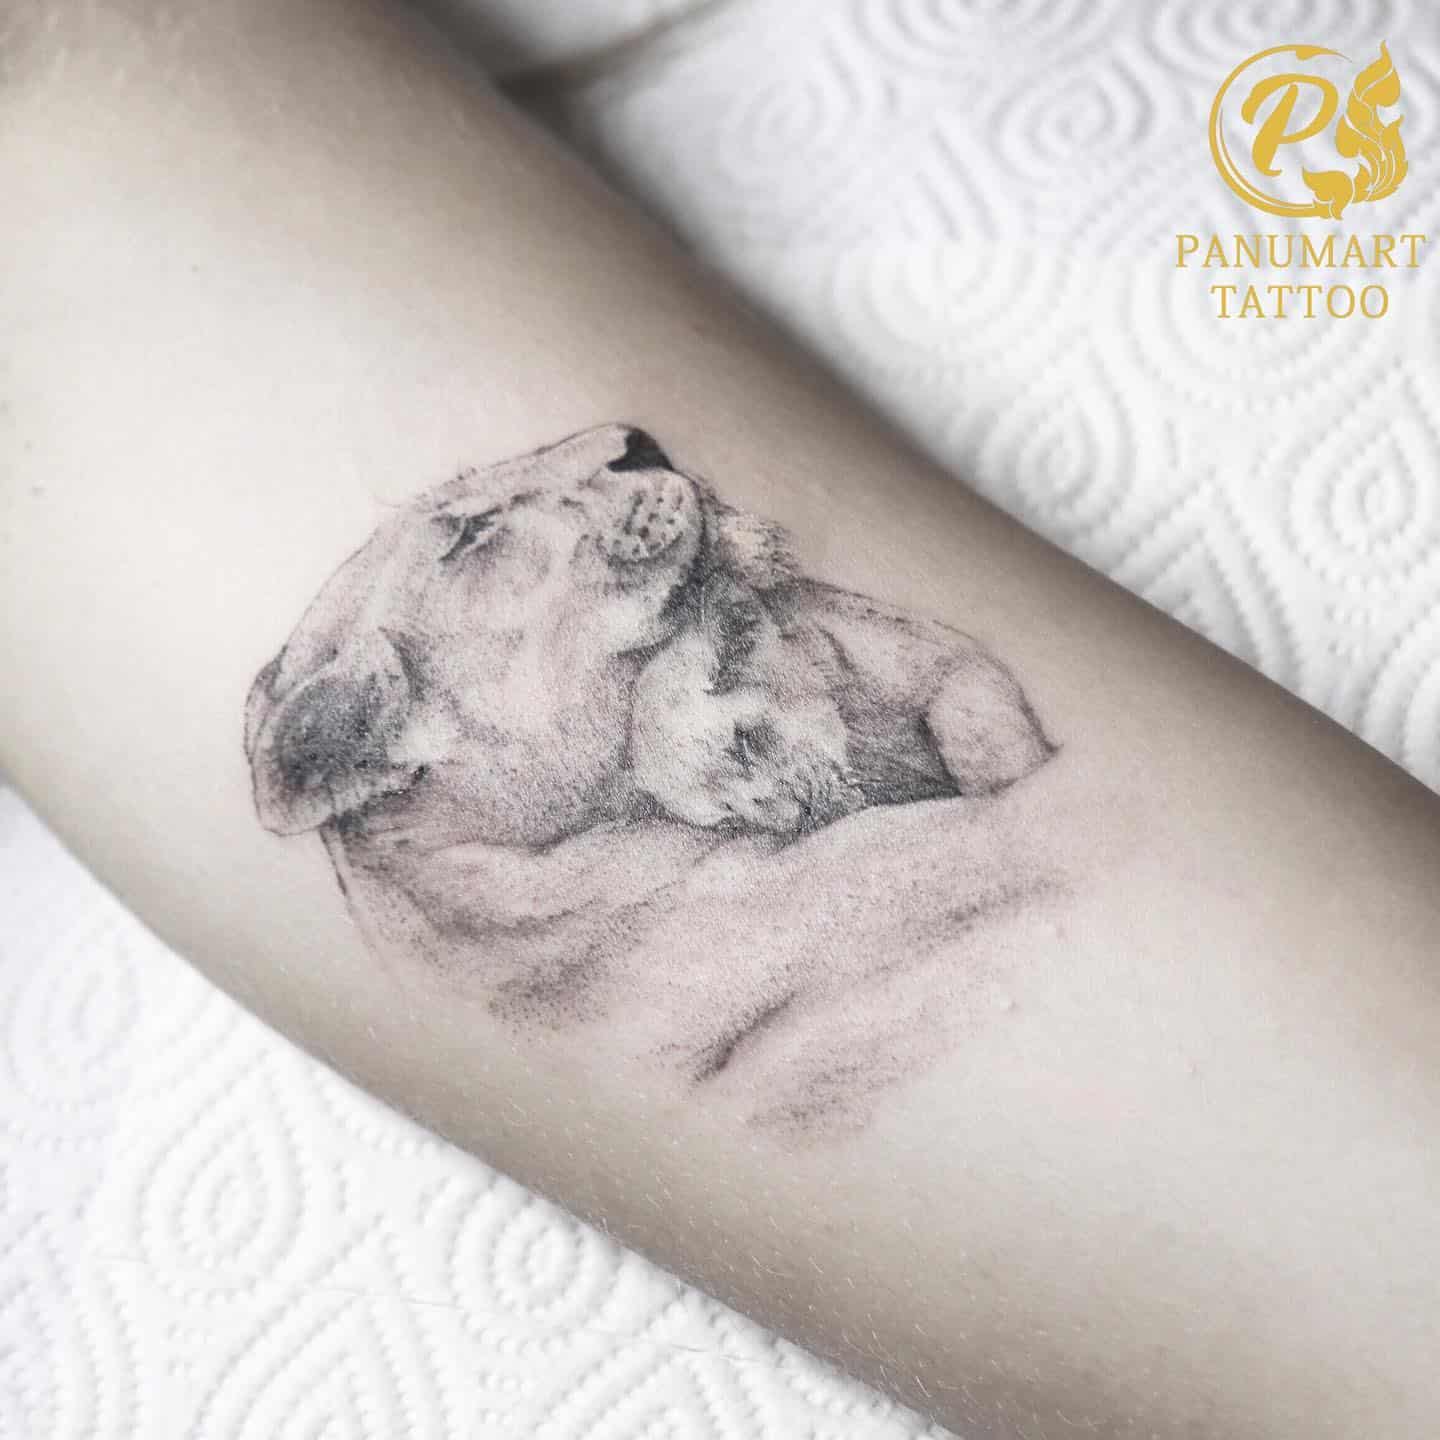 Dubai tattoo - Couples tattoo | lion tattoo #dubaitattoo #dubaiink  #dxbtattoo #dxbink #ryansancheztattoo #liontattoo #couplestattoos | Facebook